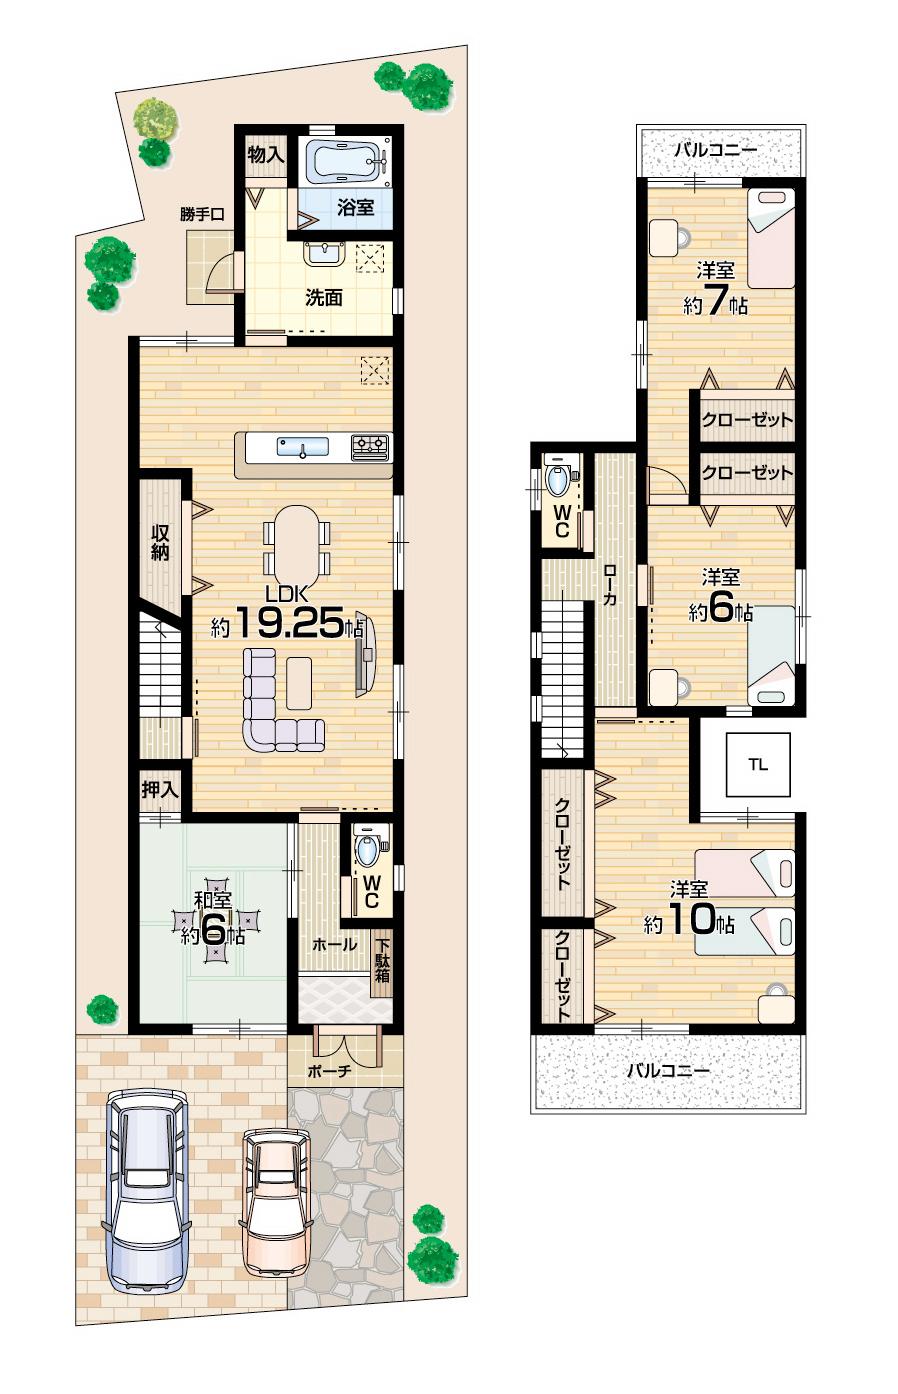 Floor plan. (D No. land), Price 33,900,000 yen, 4LDK, Land area 109.67 sq m , Building area 115.83 sq m